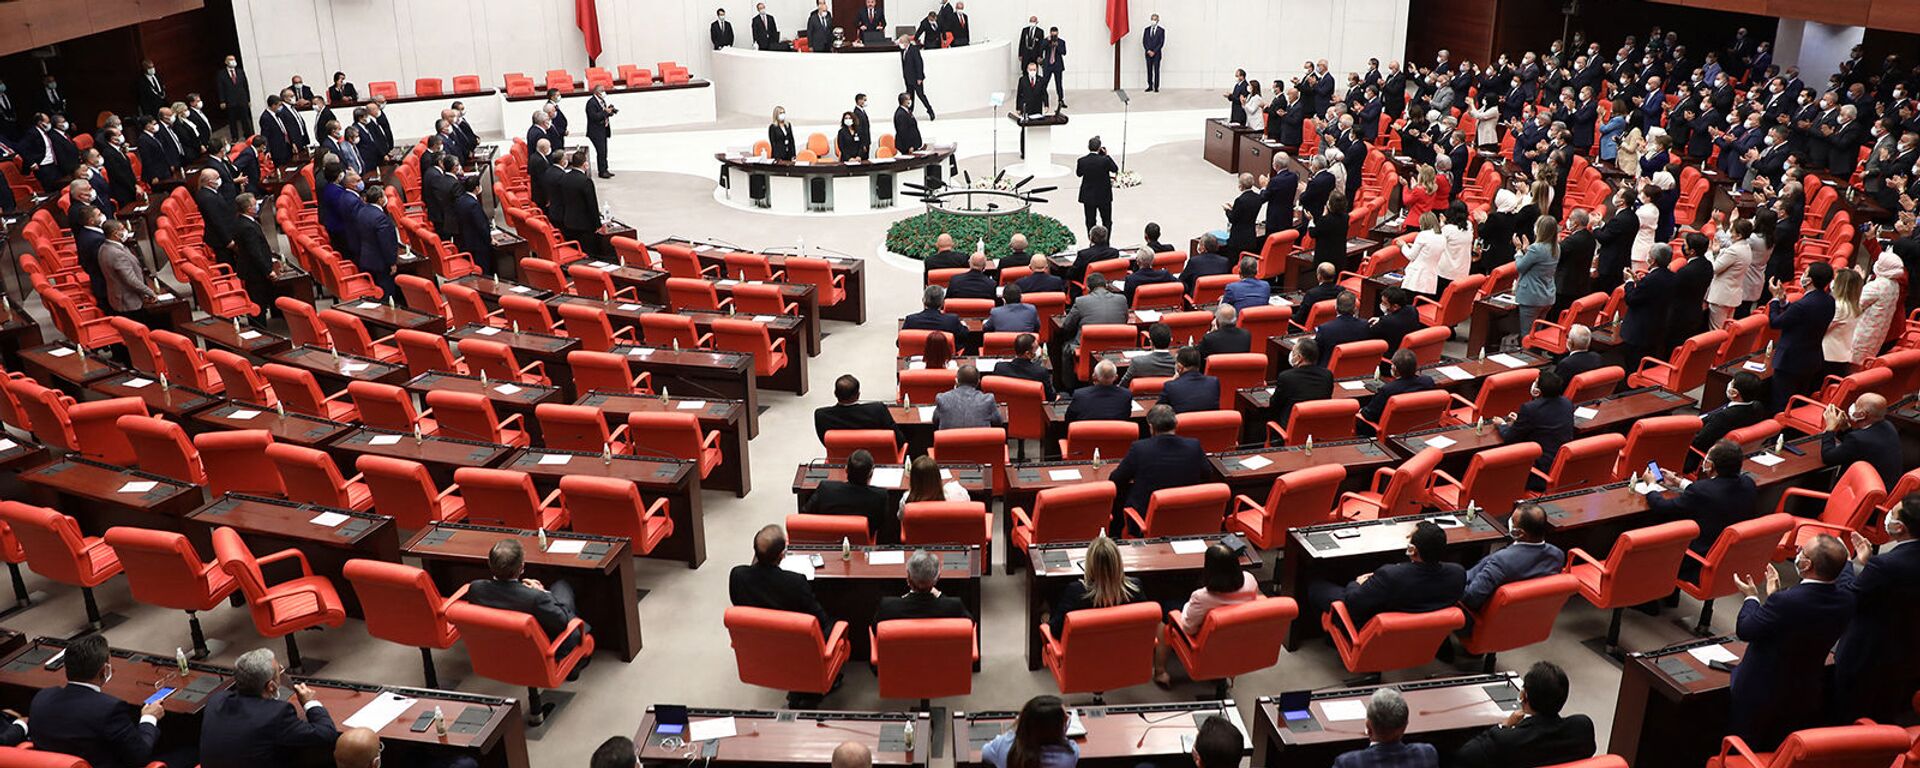 Заседание четвертой законодательной сессии турецкого парламента (1 октября 2020). Анкара - Sputnik Армения, 1920, 24.04.2021